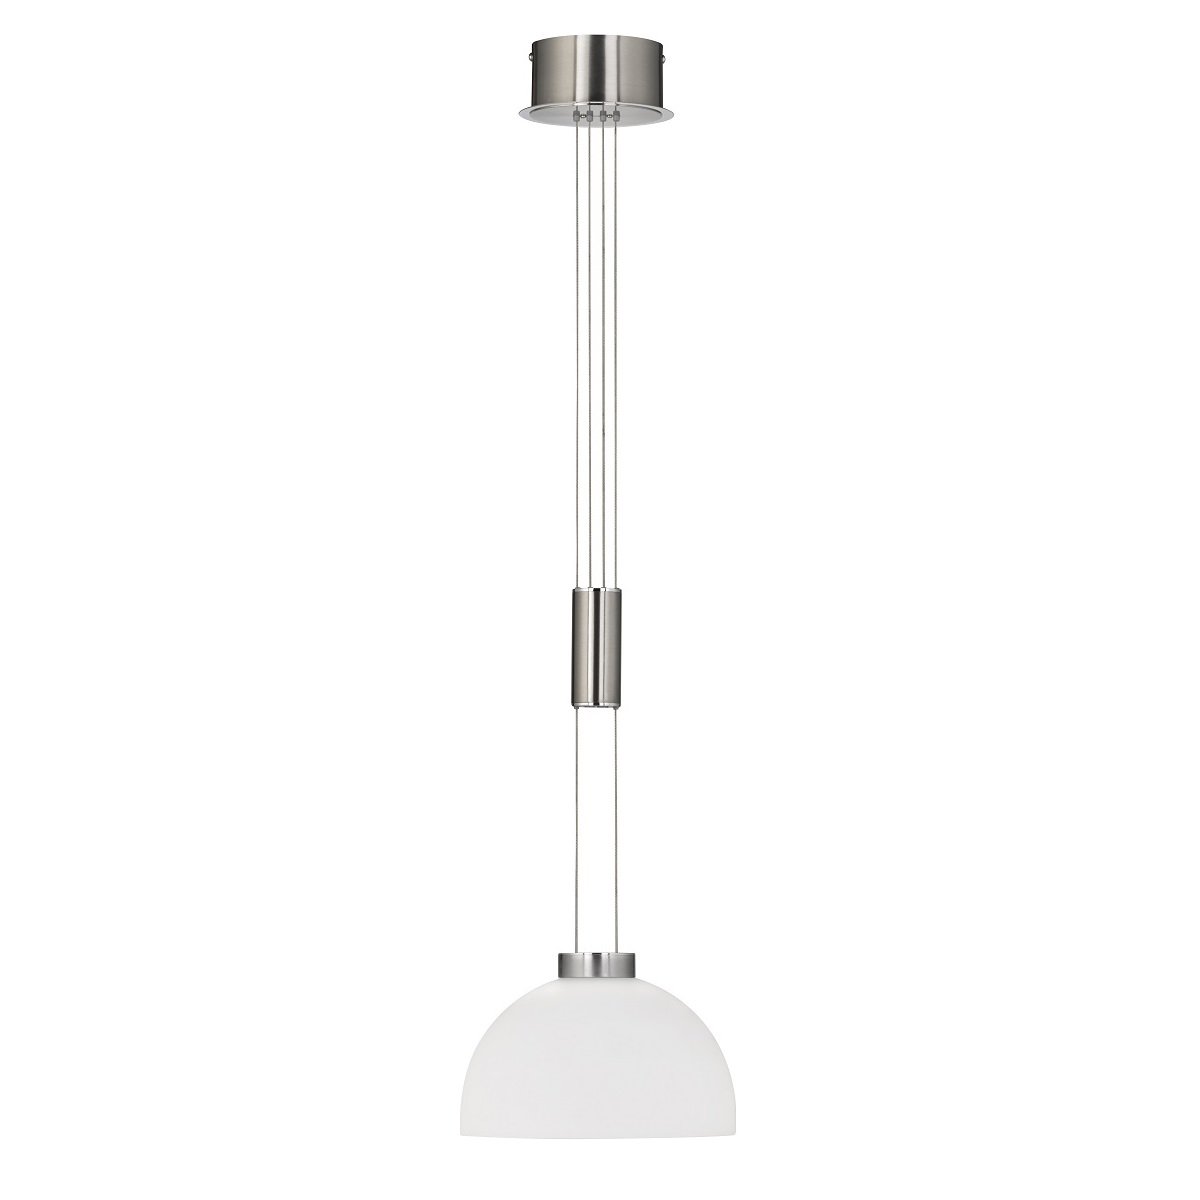 Shine LED 60143 LED Pendelleuchte 1-flammig nickel matt chrom --> Leuchten  & Lampen online kaufen im Shop | Pendelleuchten